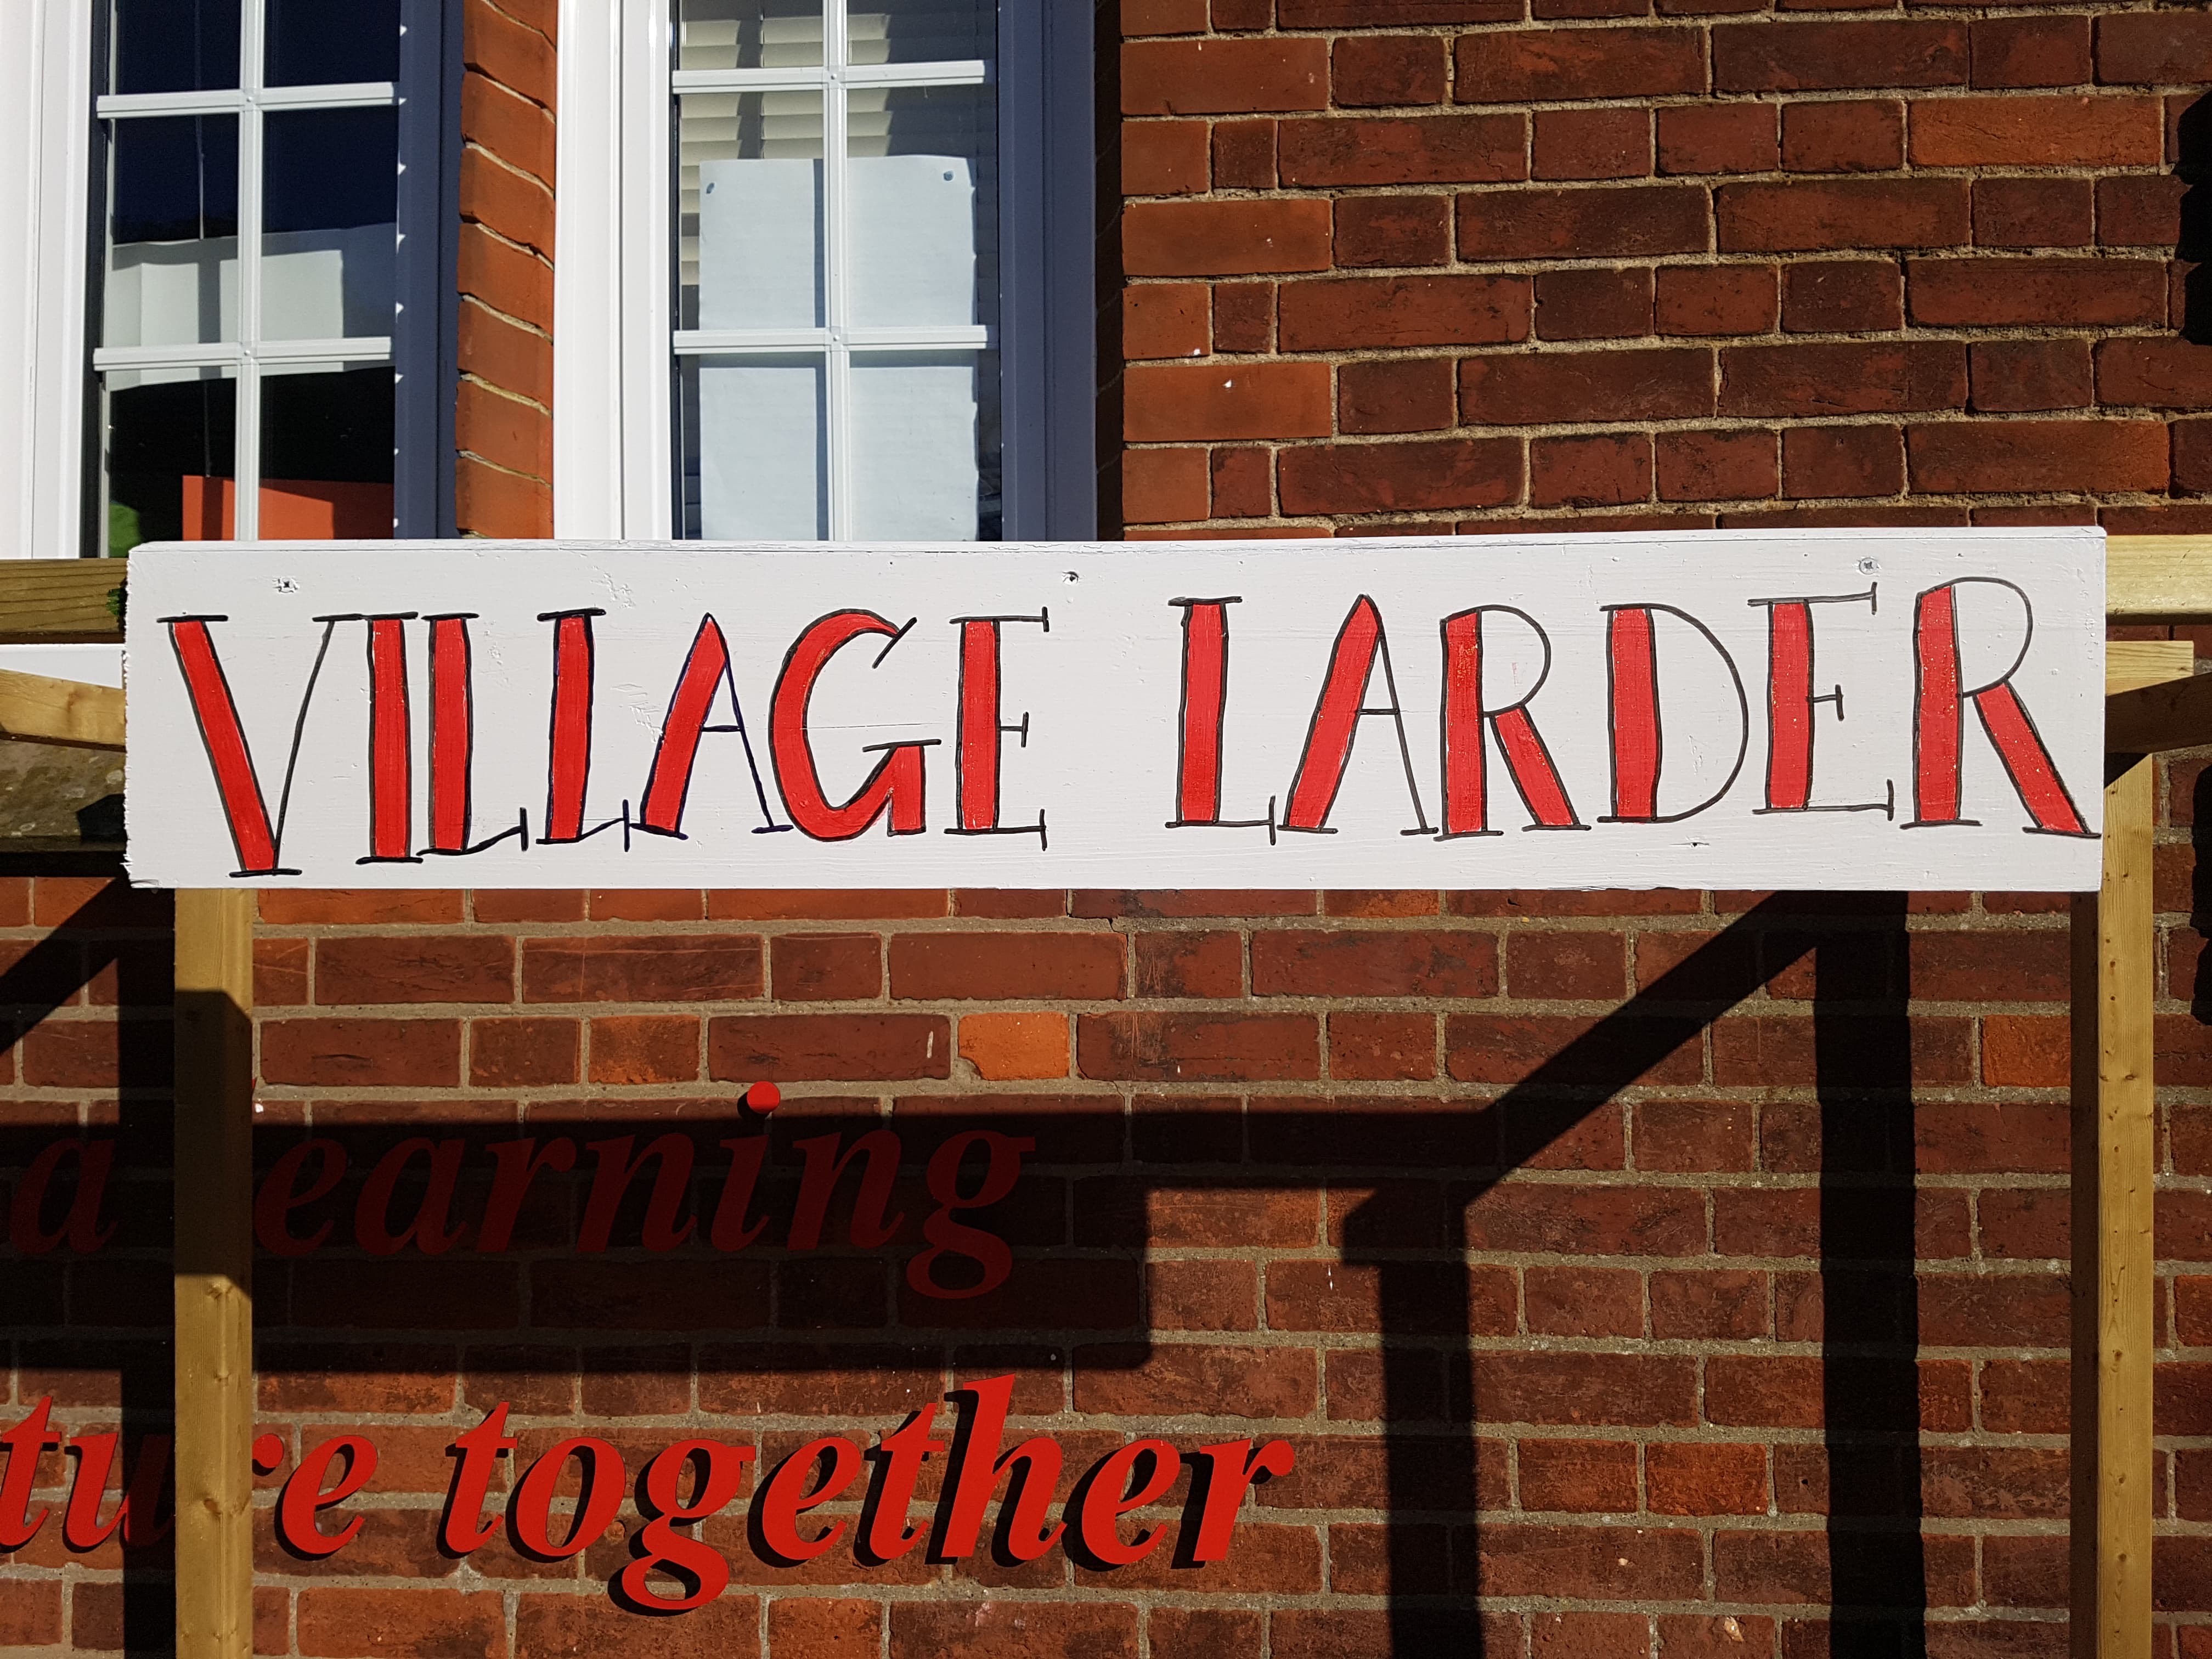 Village Larder reopens, Weds 10-11